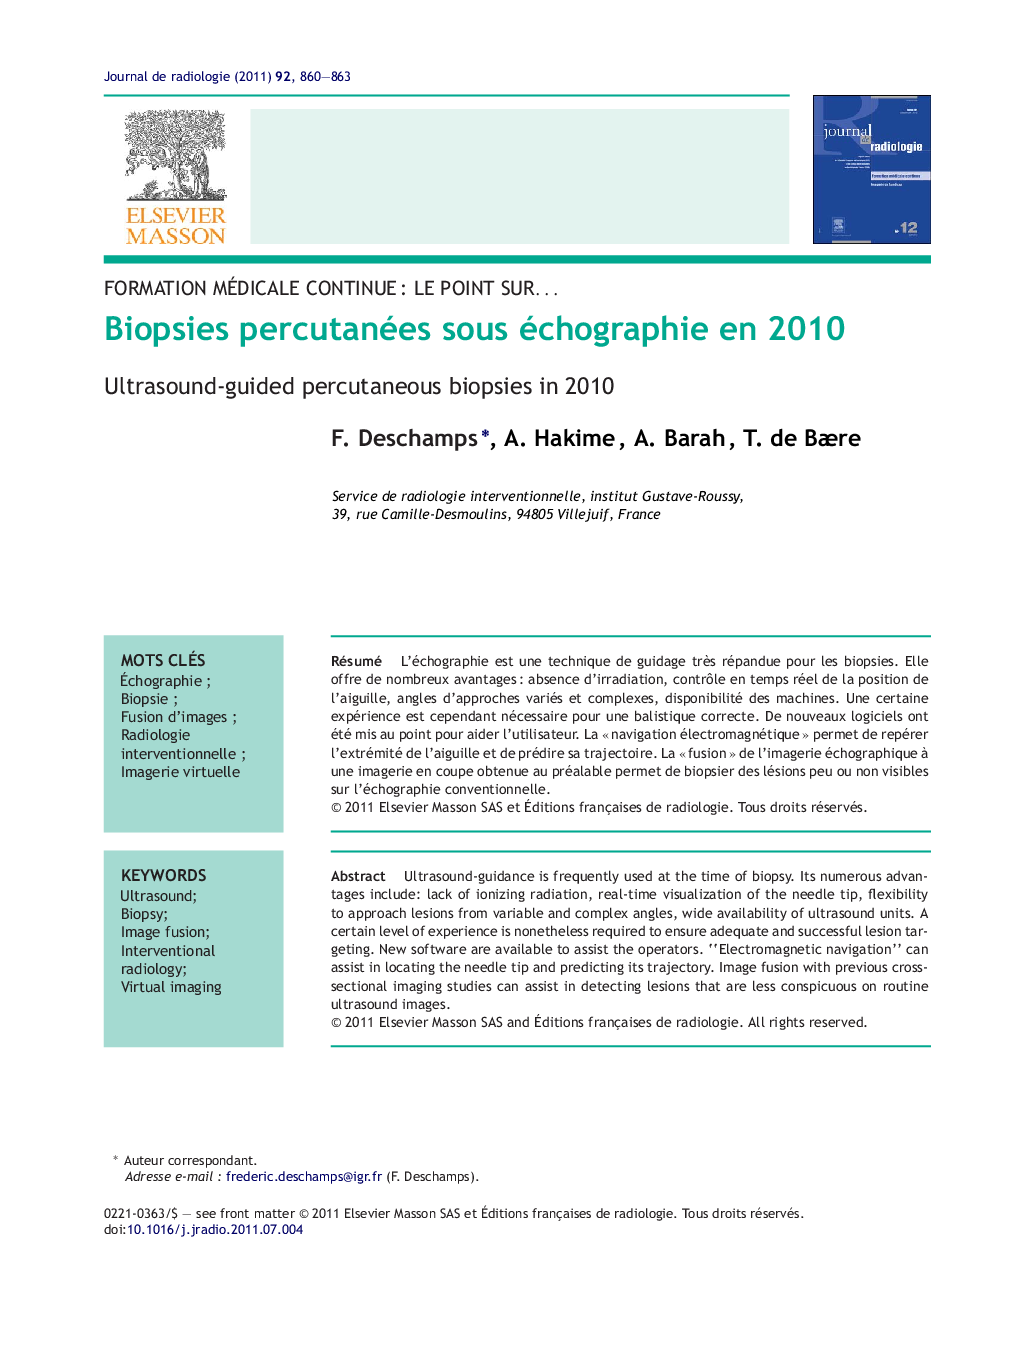 Biopsies percutanées sous échographie en 2010